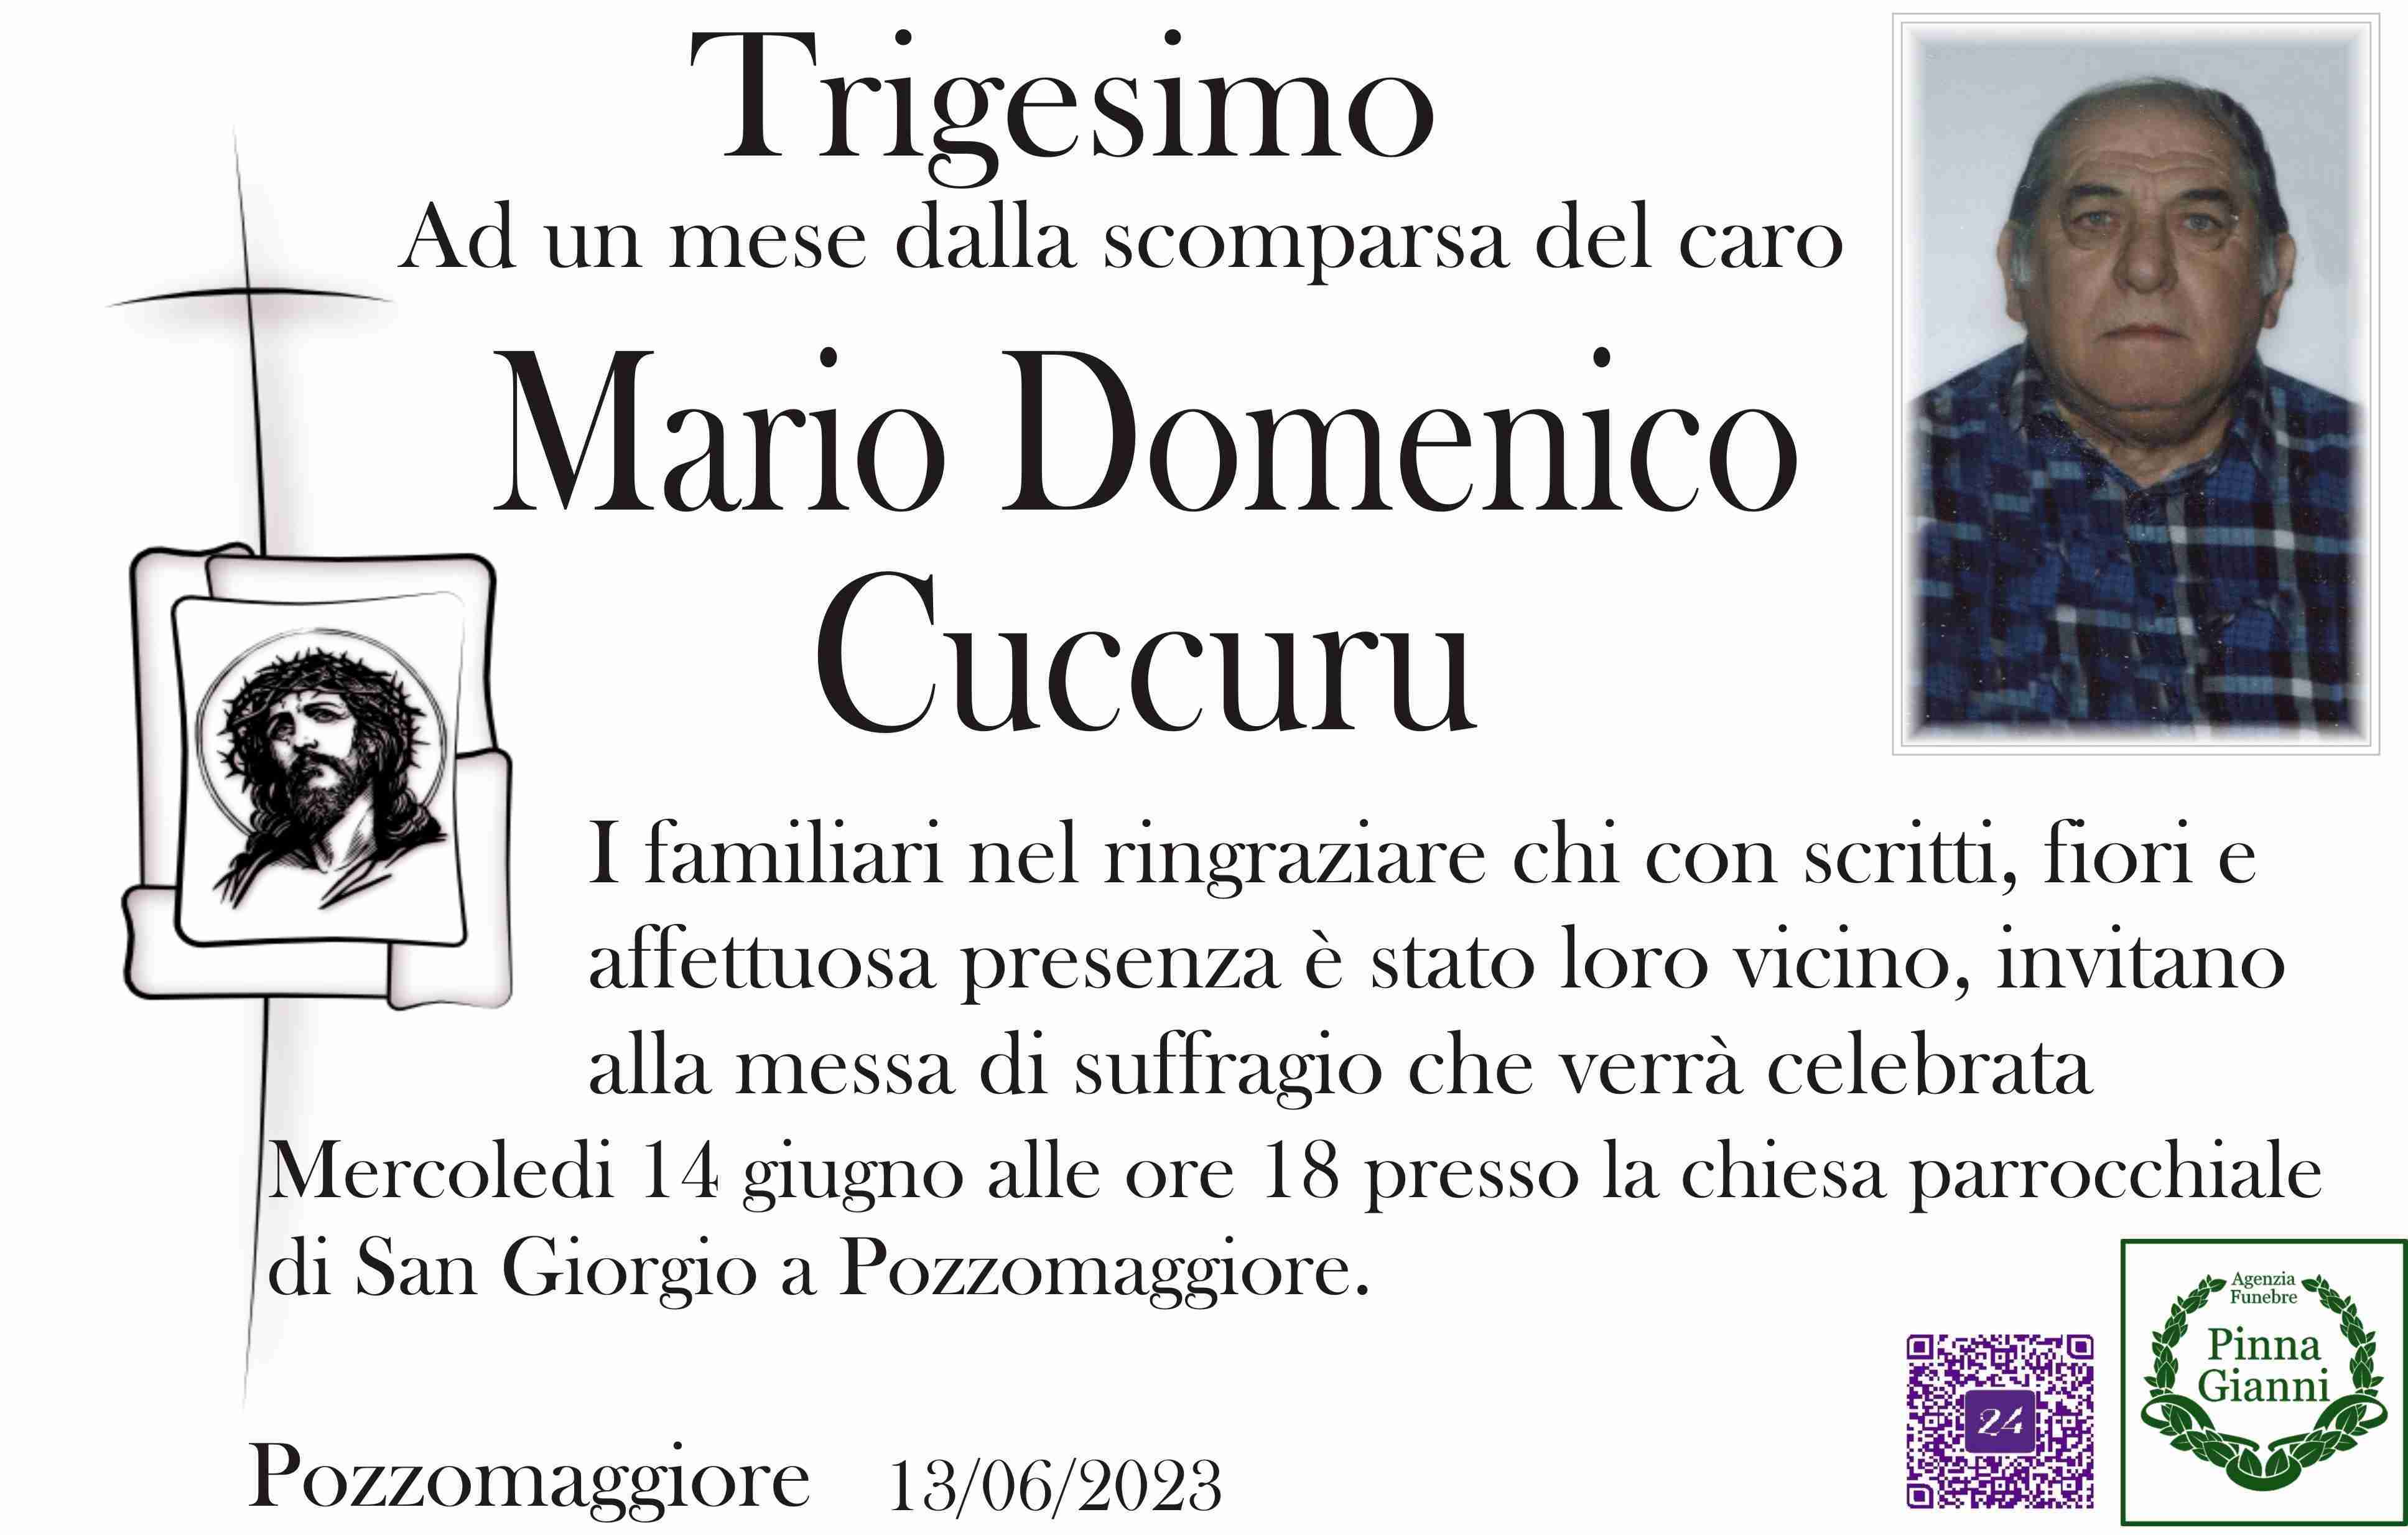 Mario Domenico Cuccuru